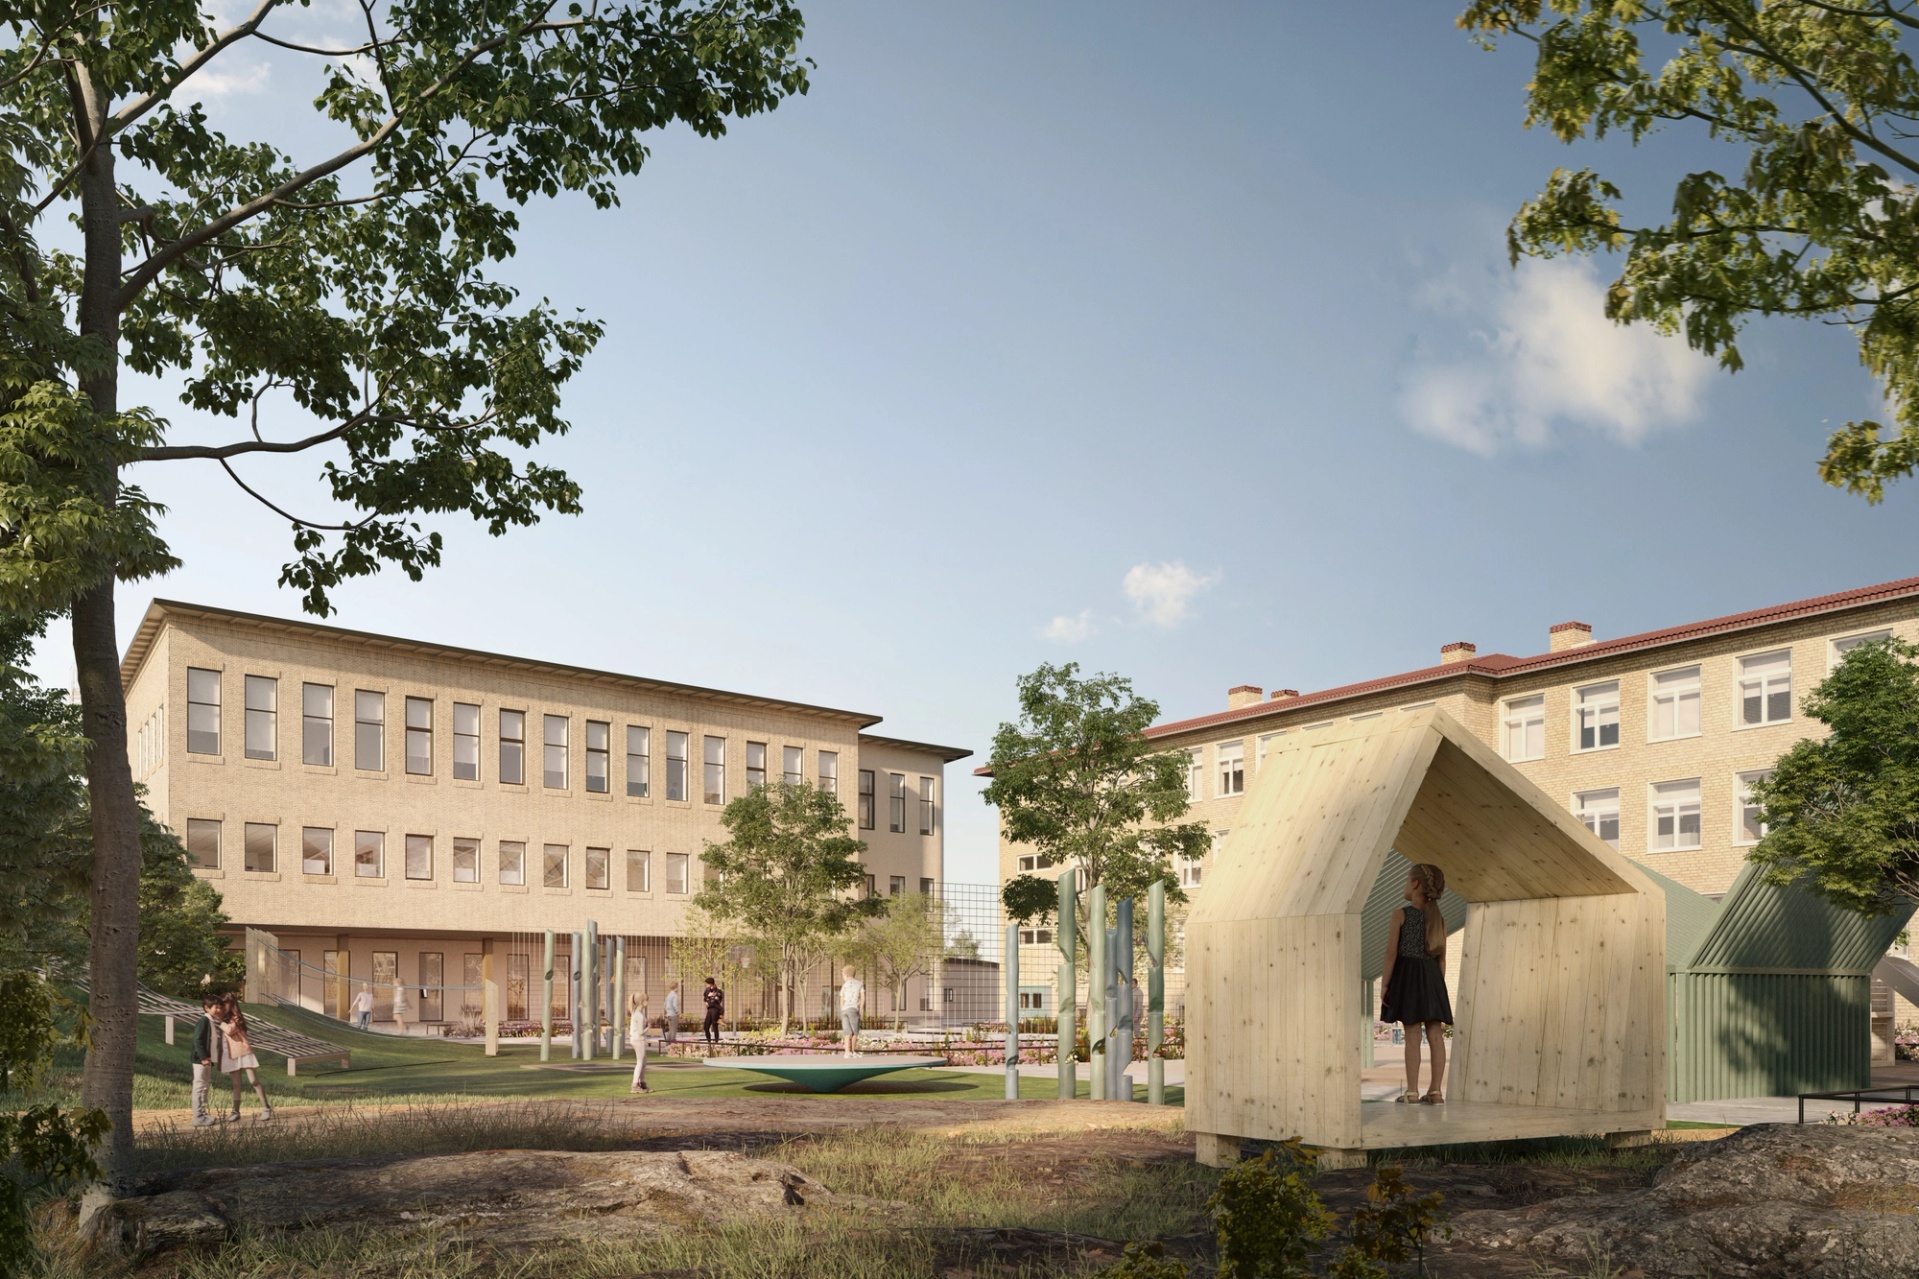 Visualisering av utemiljö, nybyggnad och renovering på Bräckeskolan i Göteborg